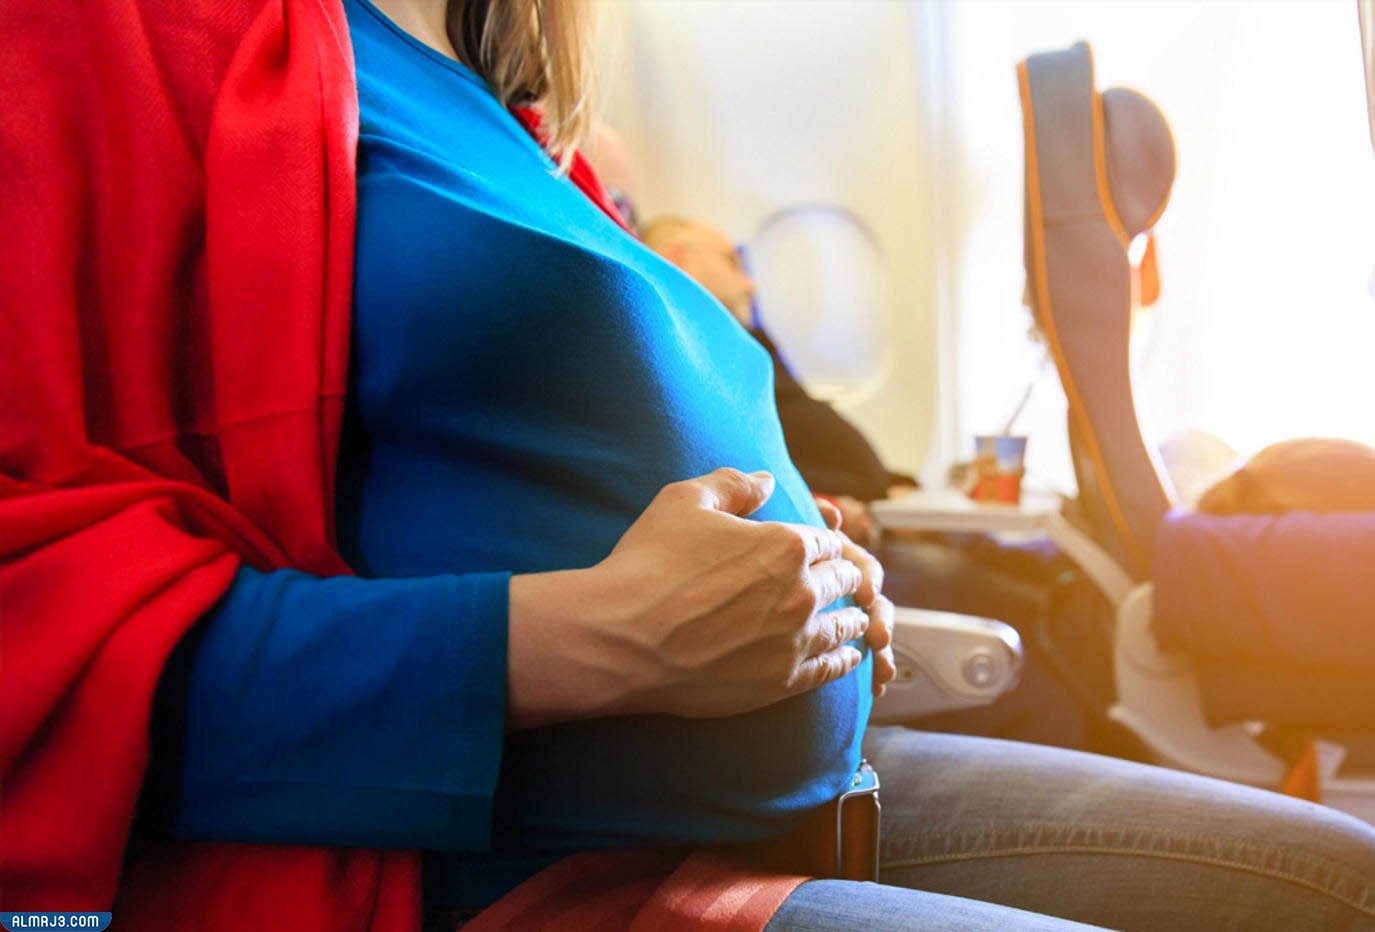 أمور تتجنبها الحامل أثناء السفر بالطائرة